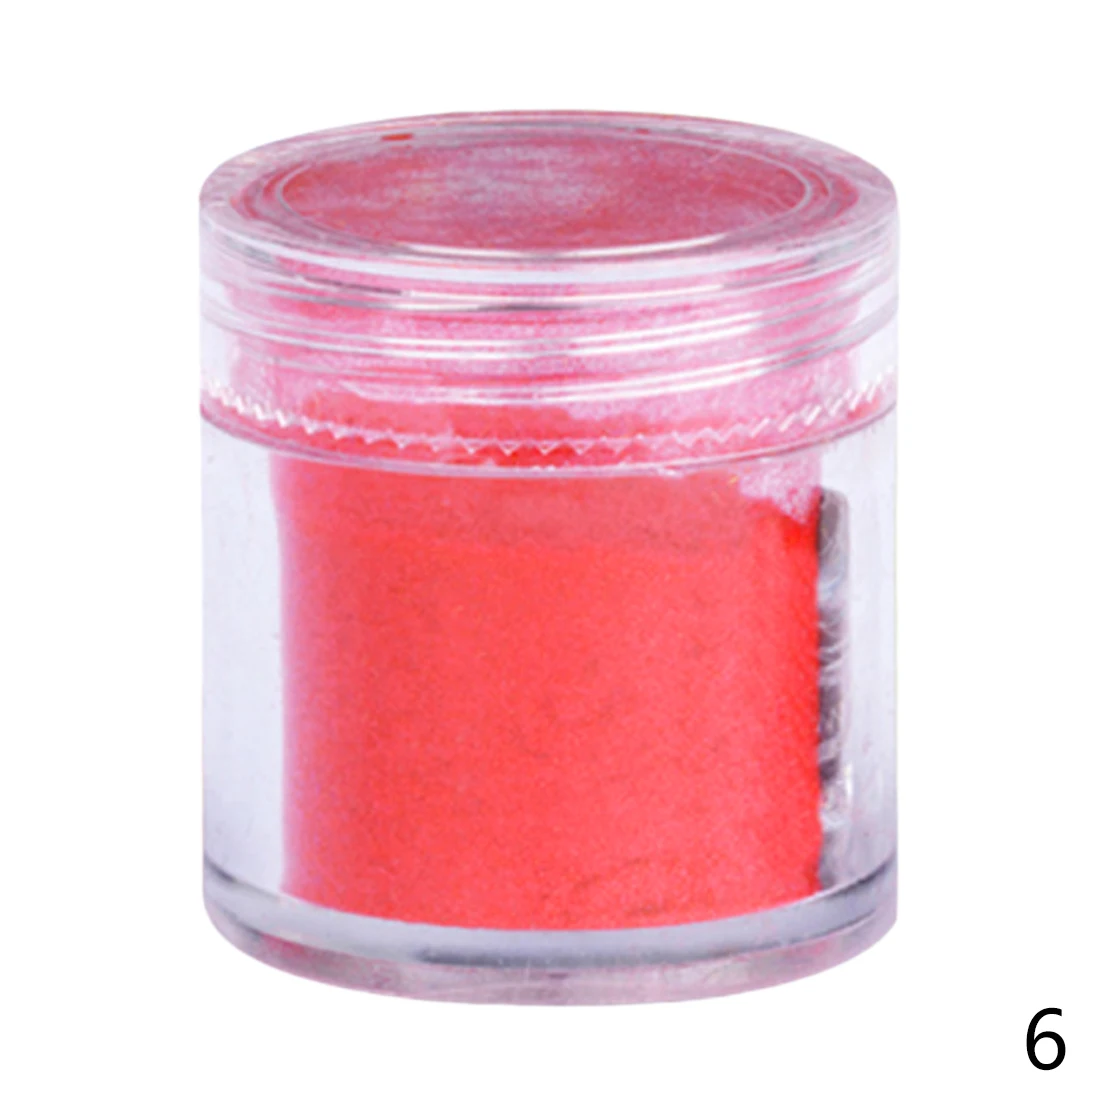 26 цветов DIY бархатный флокирующий порошок для бархатного маникюра, лак для ногтей, акриловые порошки жидкостей 10 г - Цвет: Red